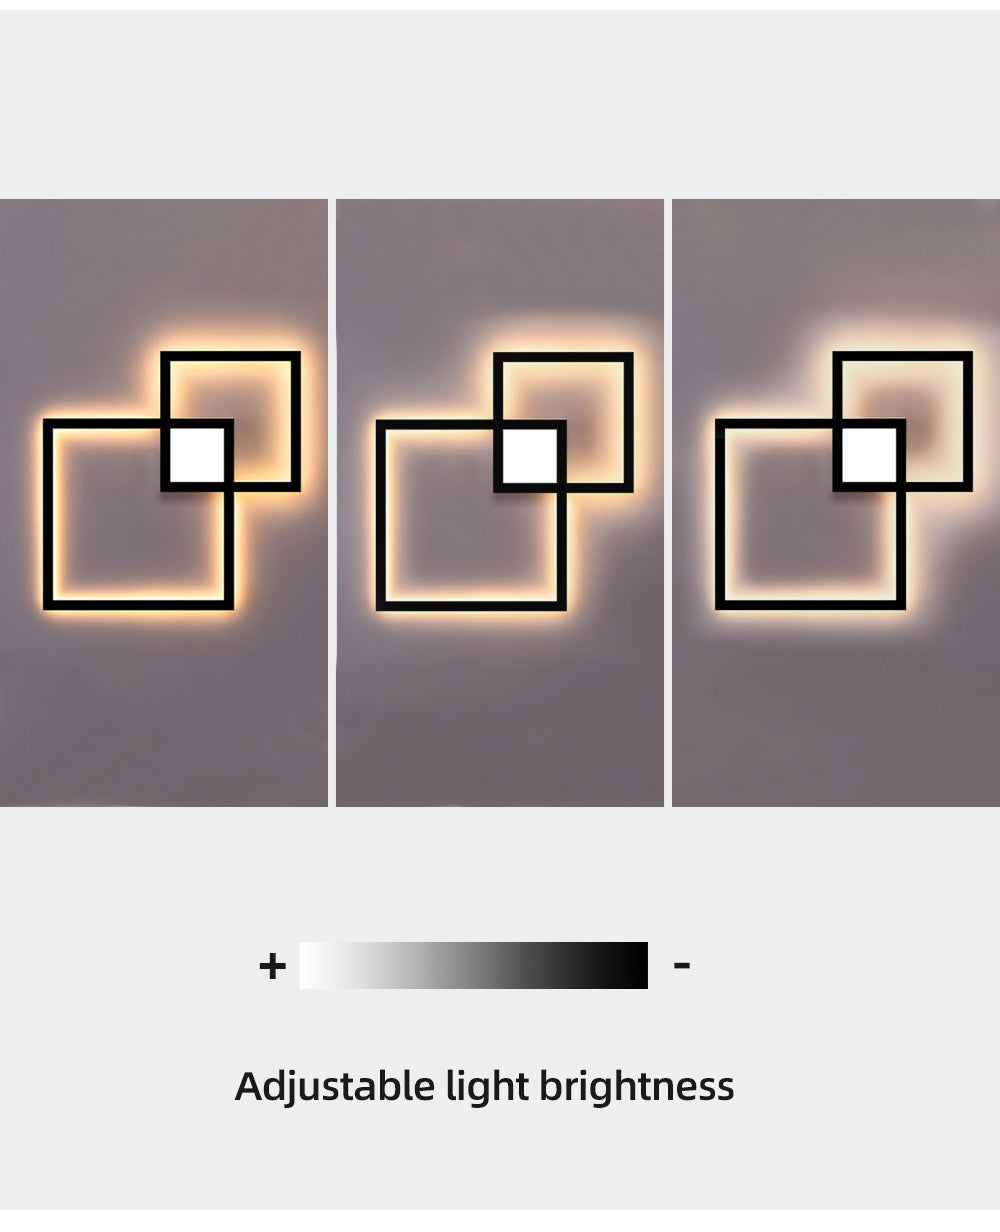 Minimalistische Wandleuchte, Dimmbar, Quadratische LED-Wandleuchte aus Metall für Eingangsbereiche, Innenraumdekoration, Schwarz oder Weiß, 110V-240V - Unique Outlet